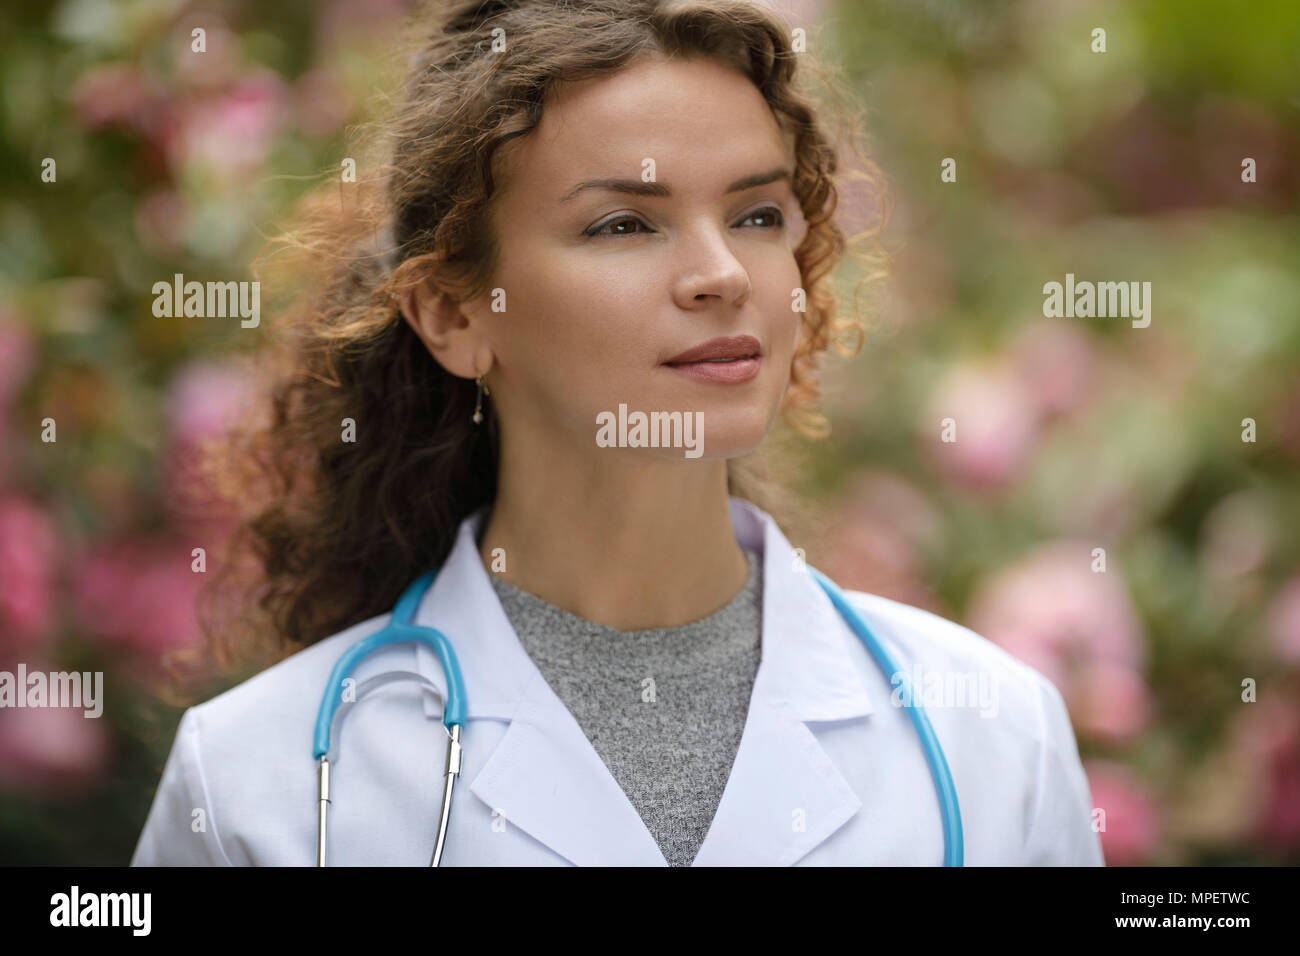 Retrato de un joven médico, médico con un aspirante a mirada pensativa, carrera en medicina natural, cuidado de la salud como un médico. El wo Foto de stock